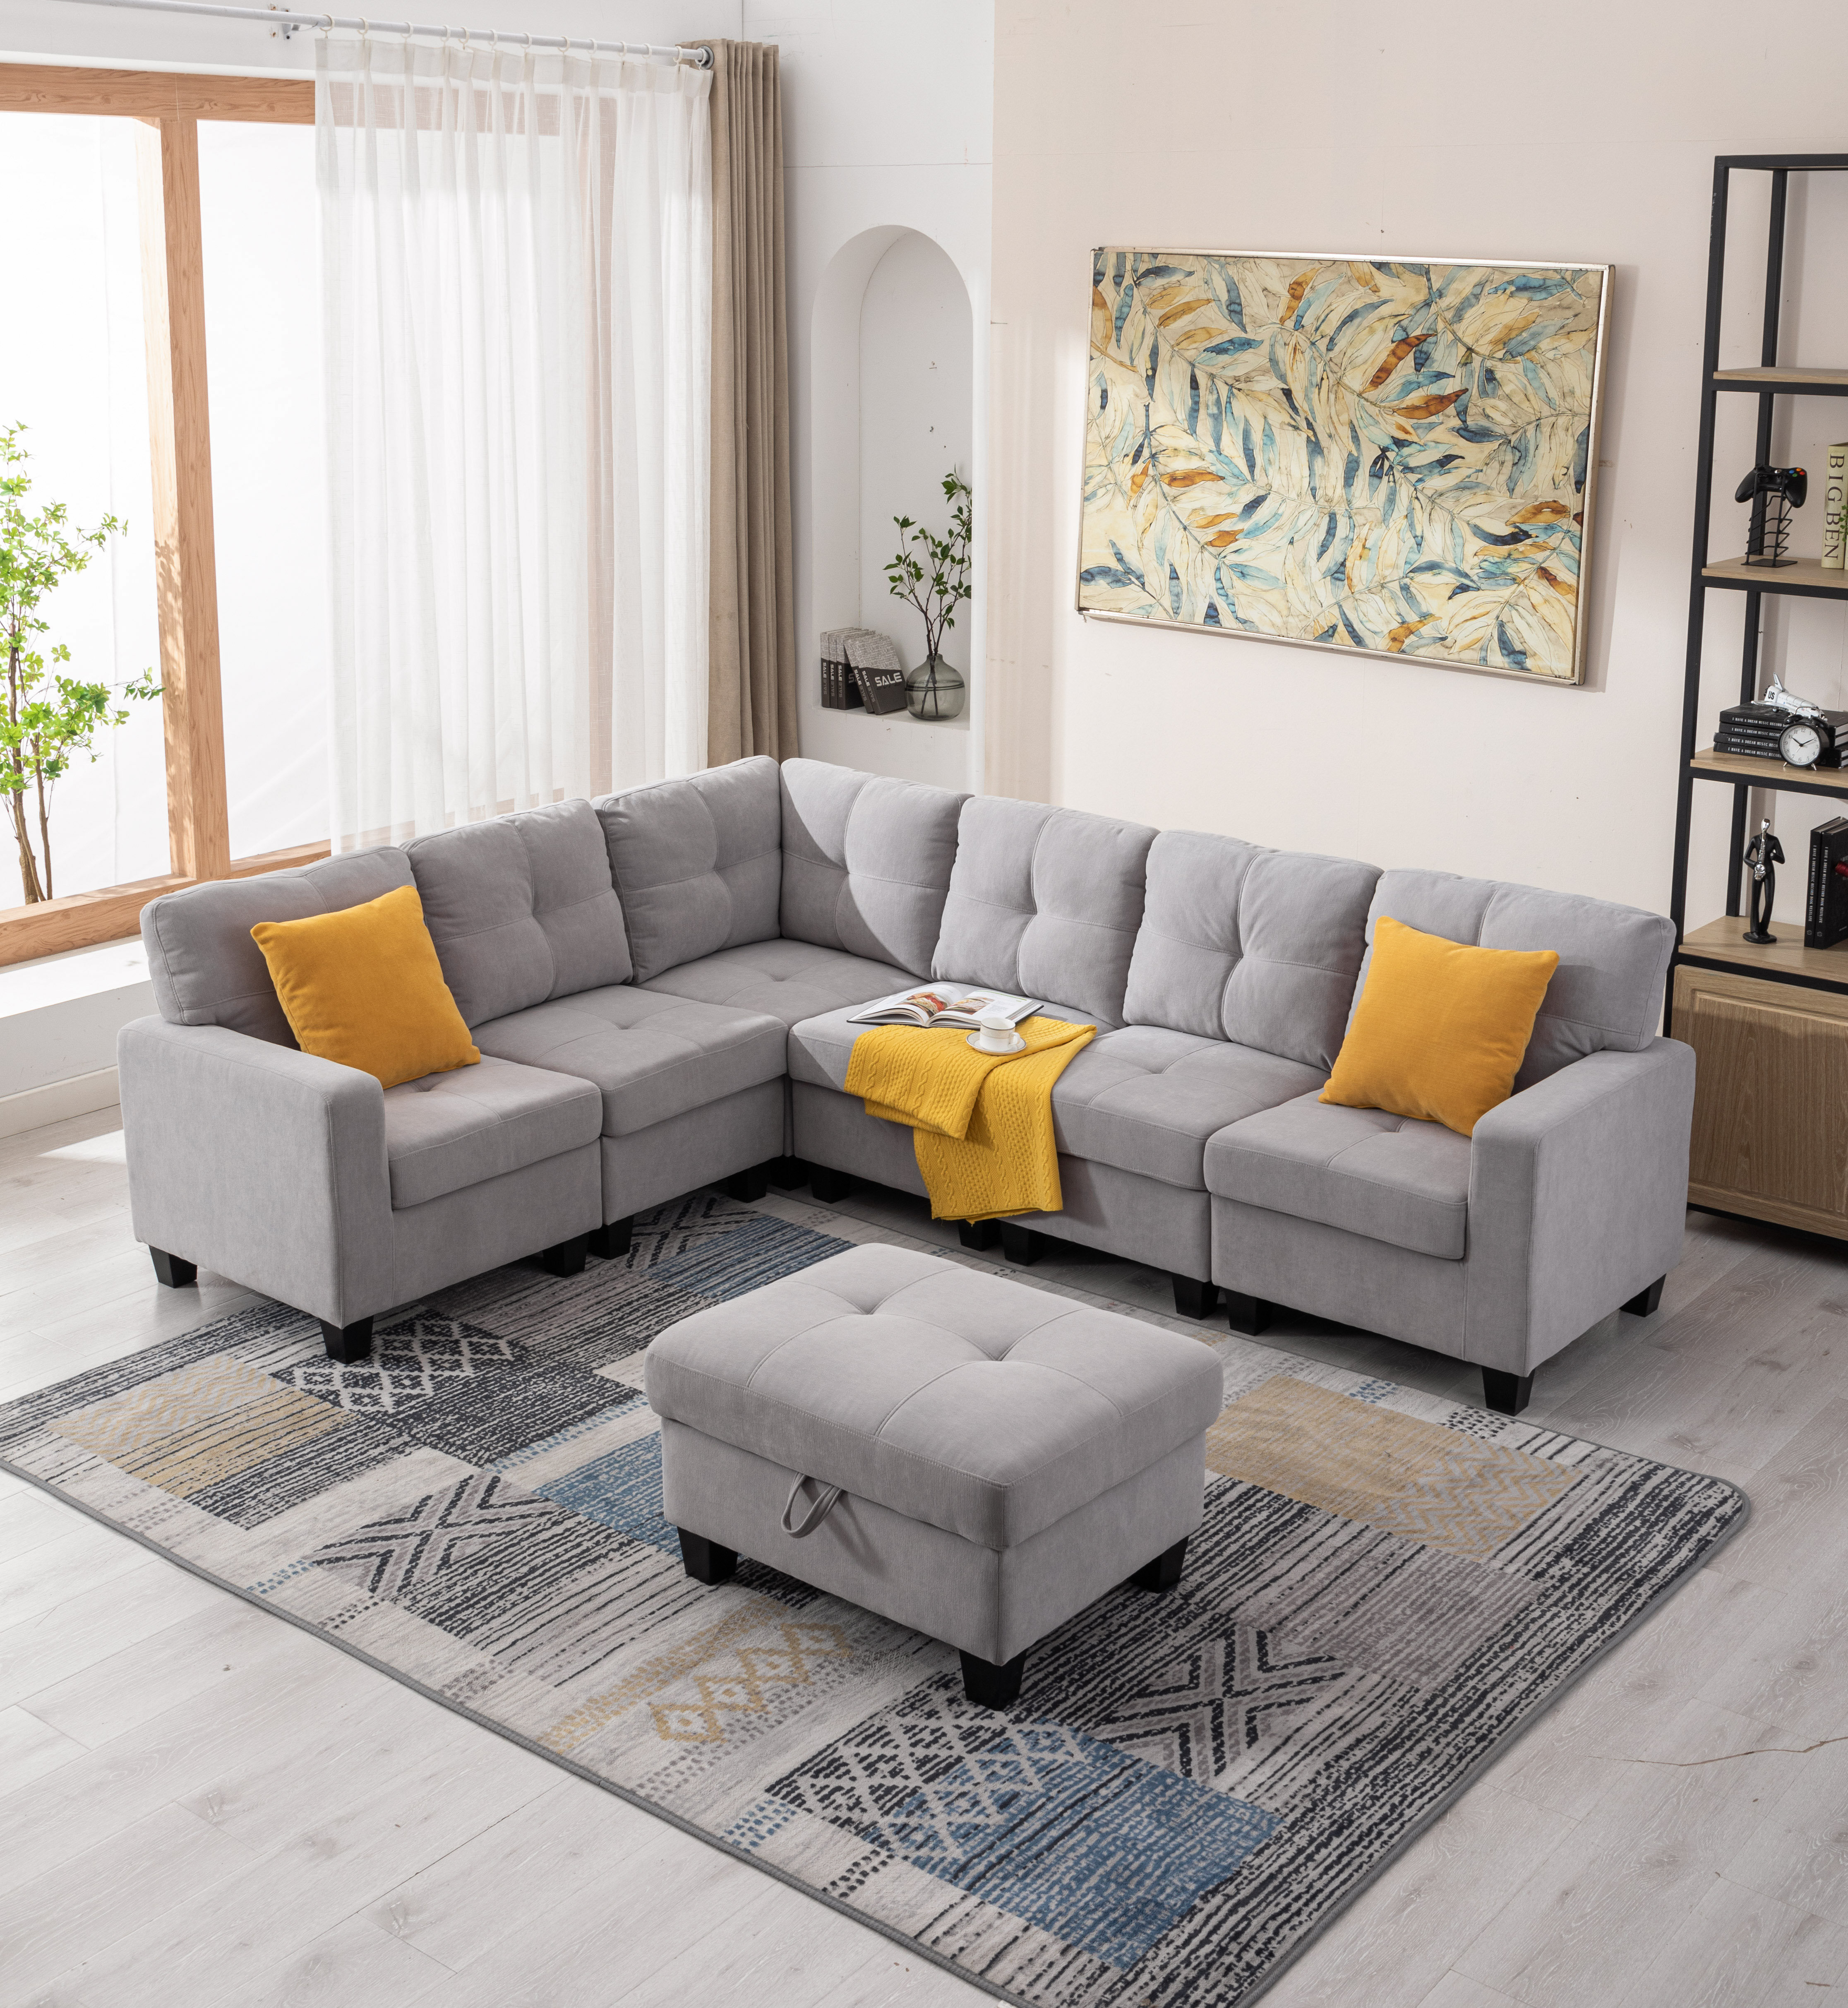 https://assets.wfcdn.com/im/97594736/compr-r85/2104/210495197/reversible-modular-corner-sectional-sofa-ottoman-set.jpg